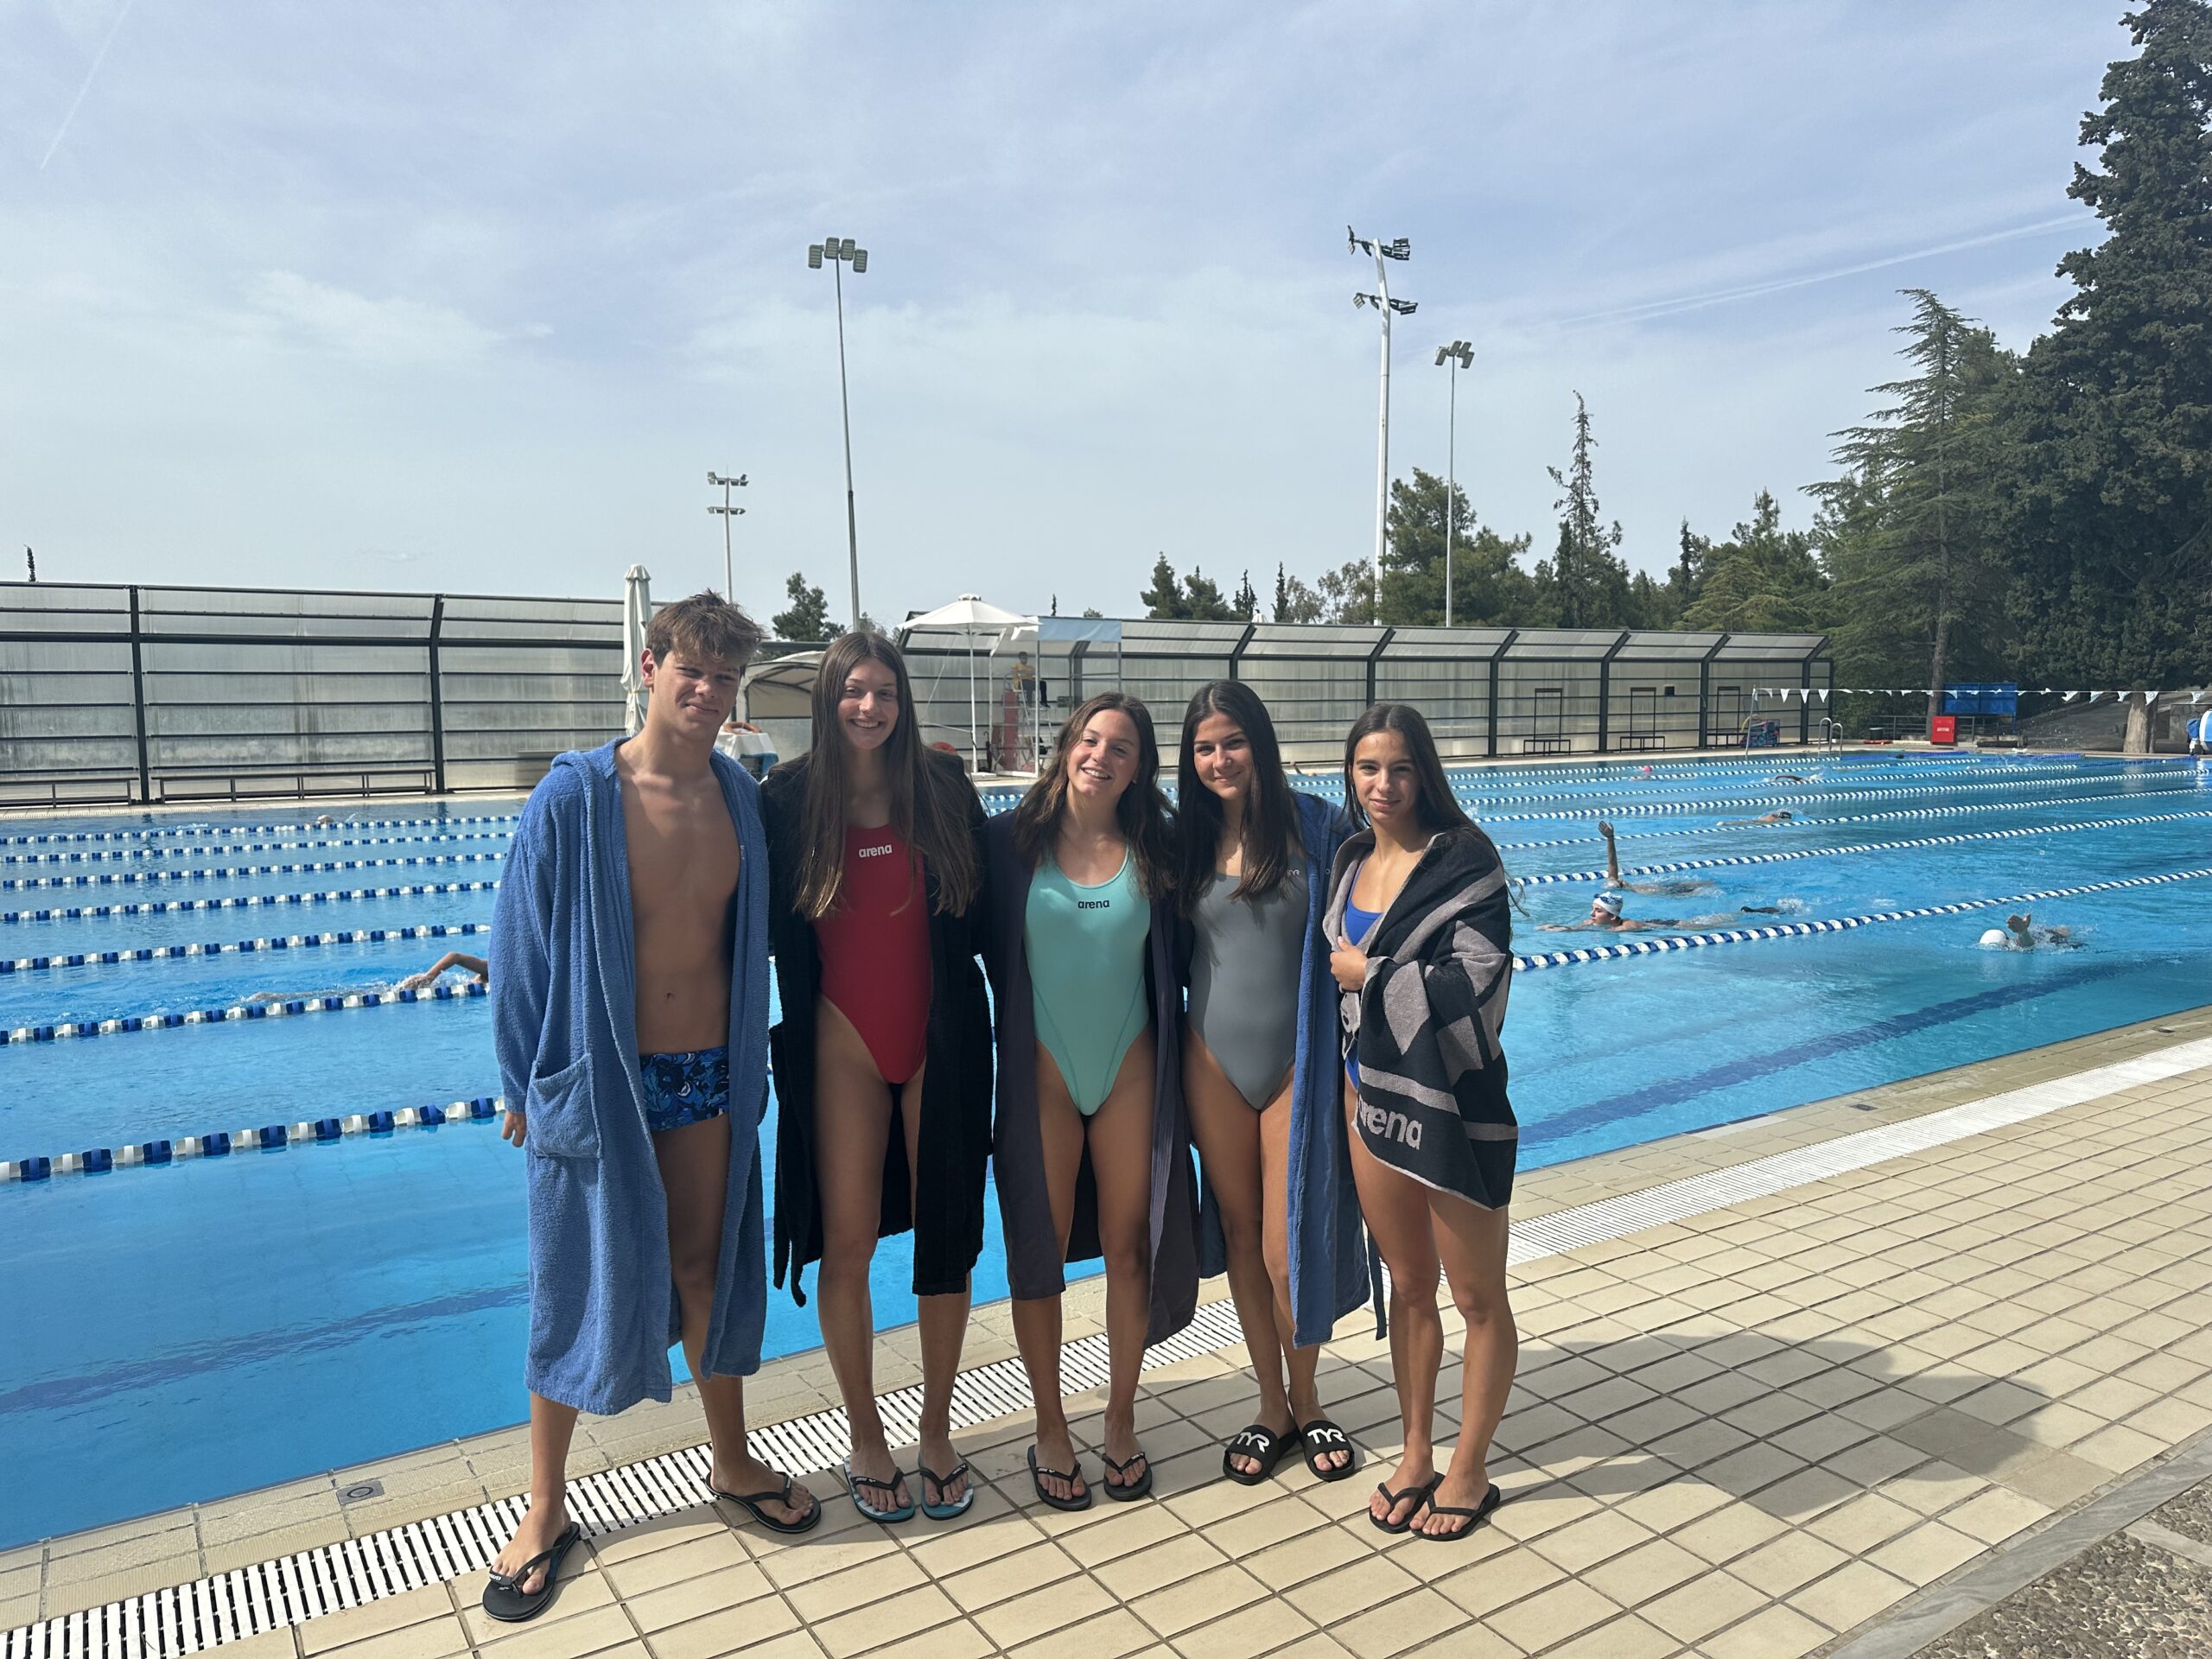 1η θέση για την Deree Swim Academy στο Πανελλήνιο Σχολικό Πρωτάθλημα στη Θεσσαλονίκη!